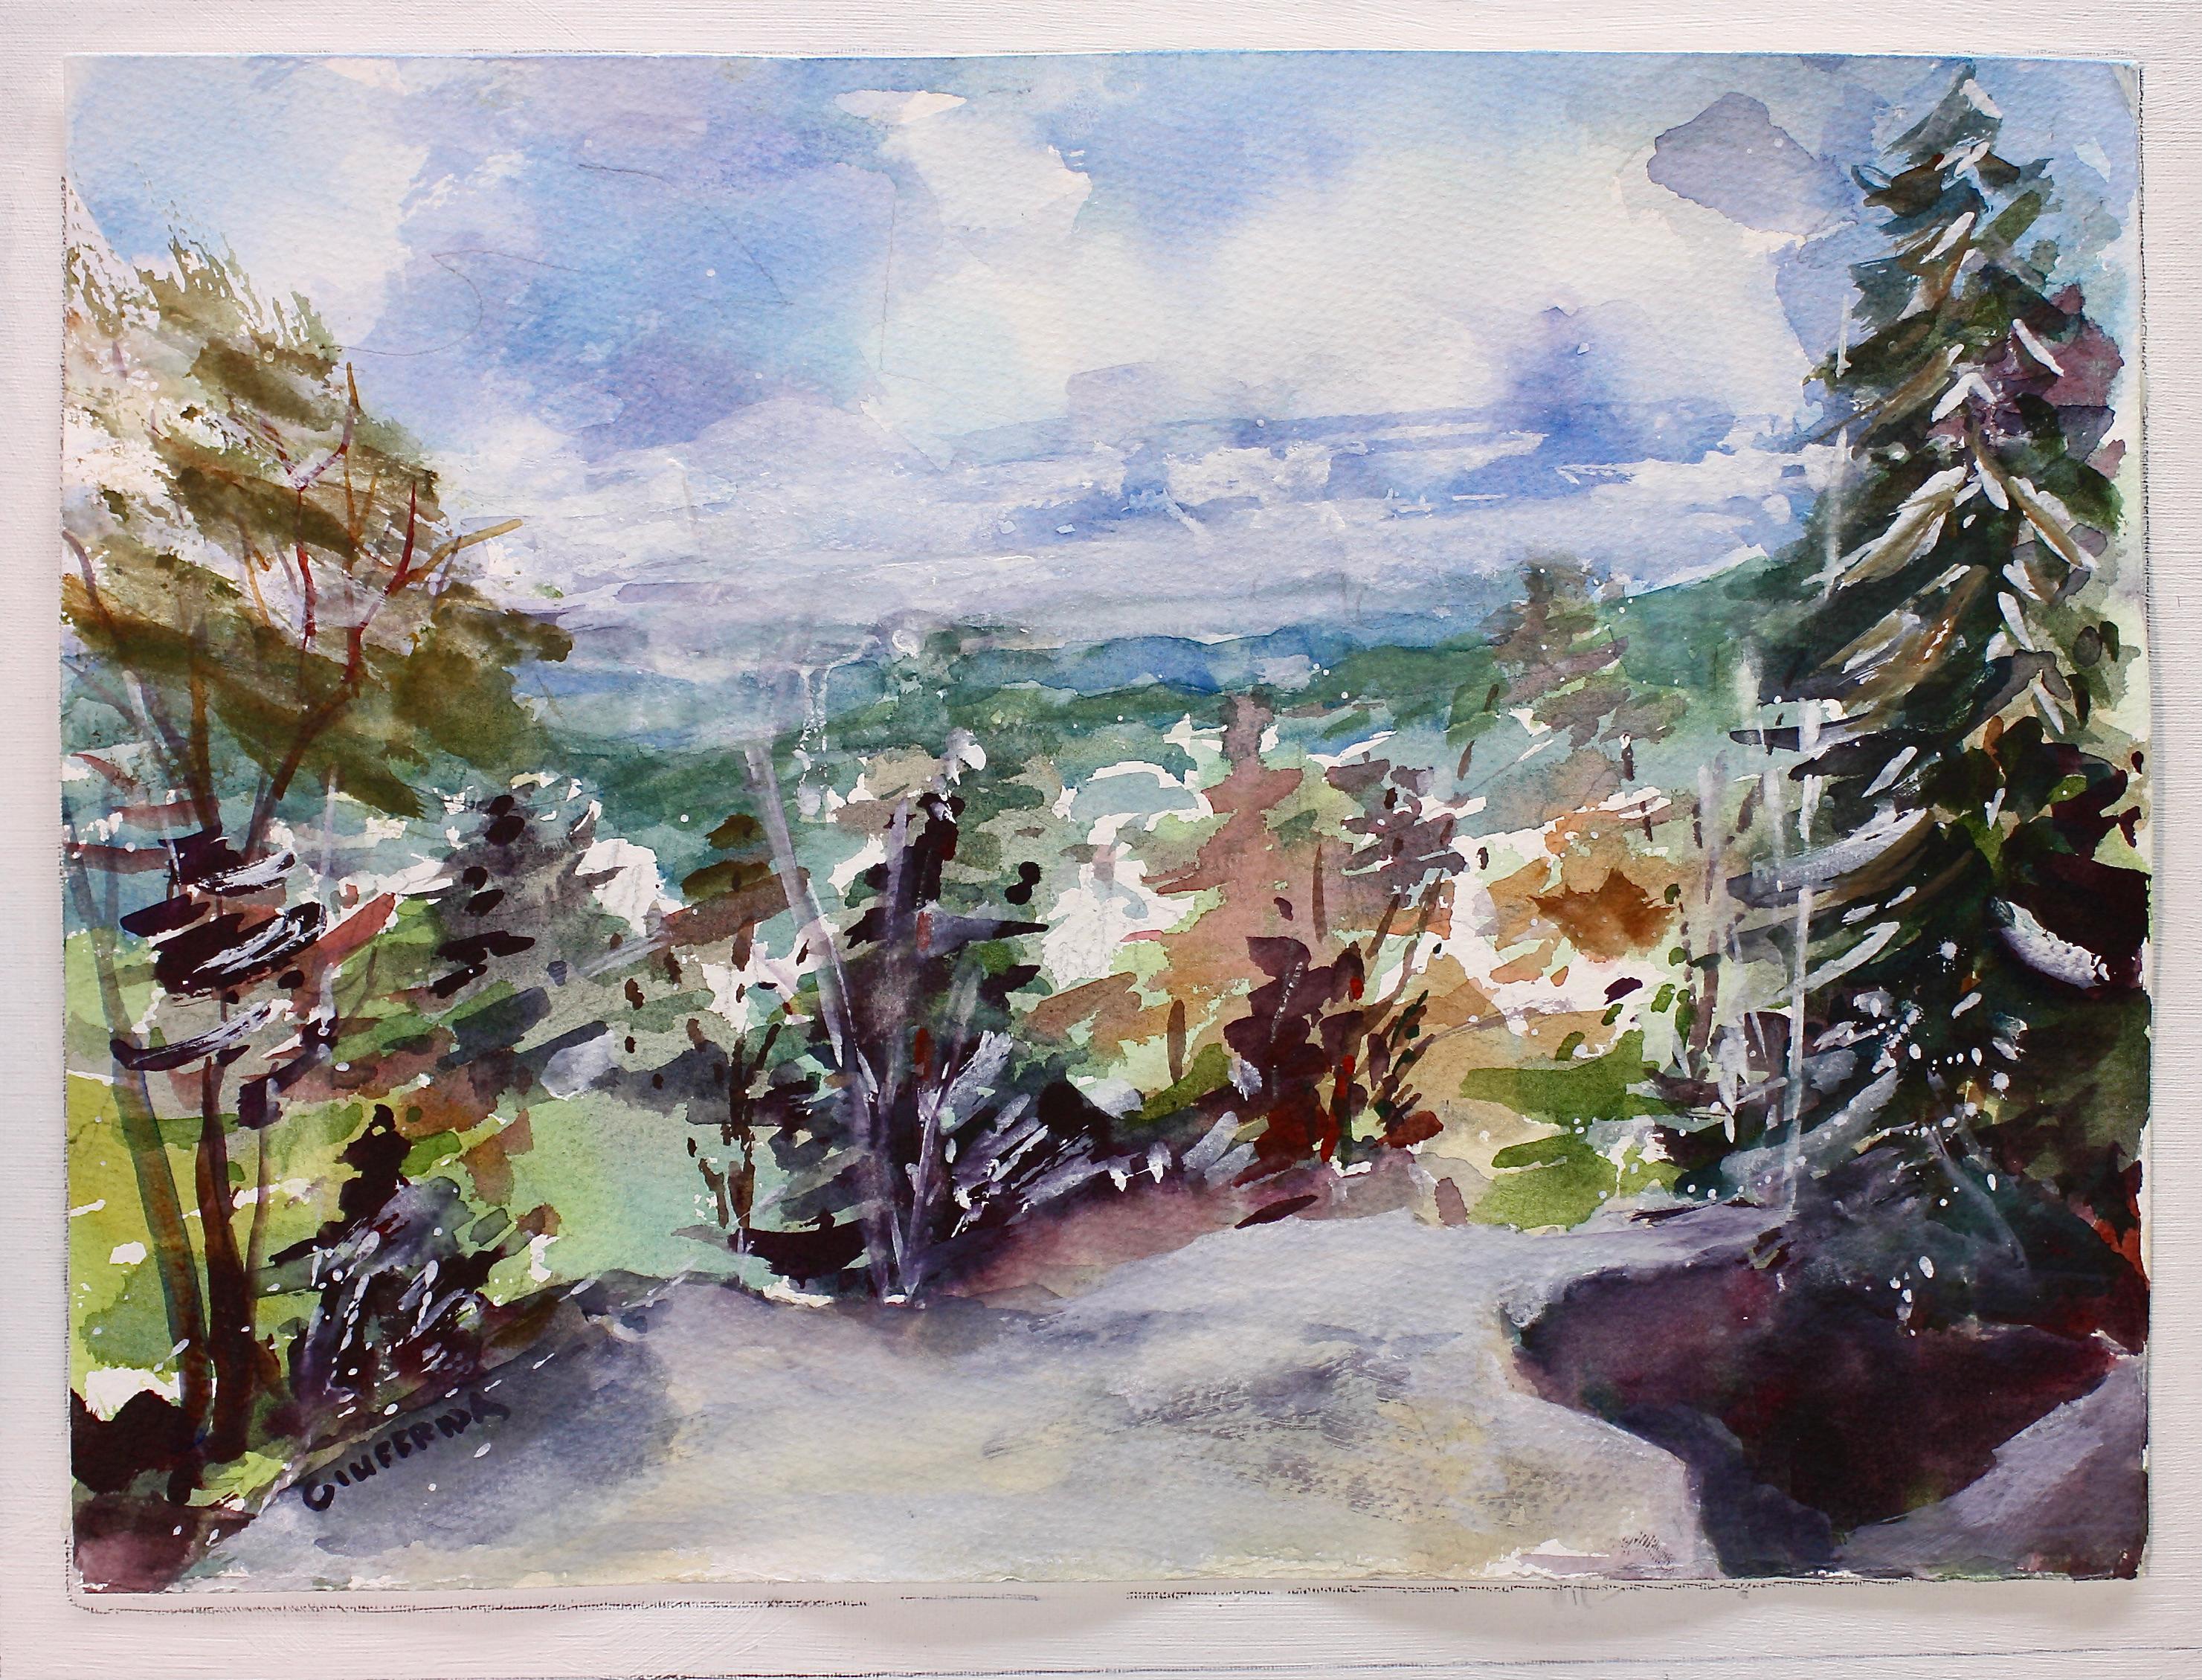 <p>Commentaires de l'artiste<br>L'artiste Joe Giuffrida illustre une perspective scénique de la vallée de la rivière Hudson en automne. La vue porte sur le sud-est de la ville de Kingston depuis l'époustouflant Overlook Mountain. Joe pousse son